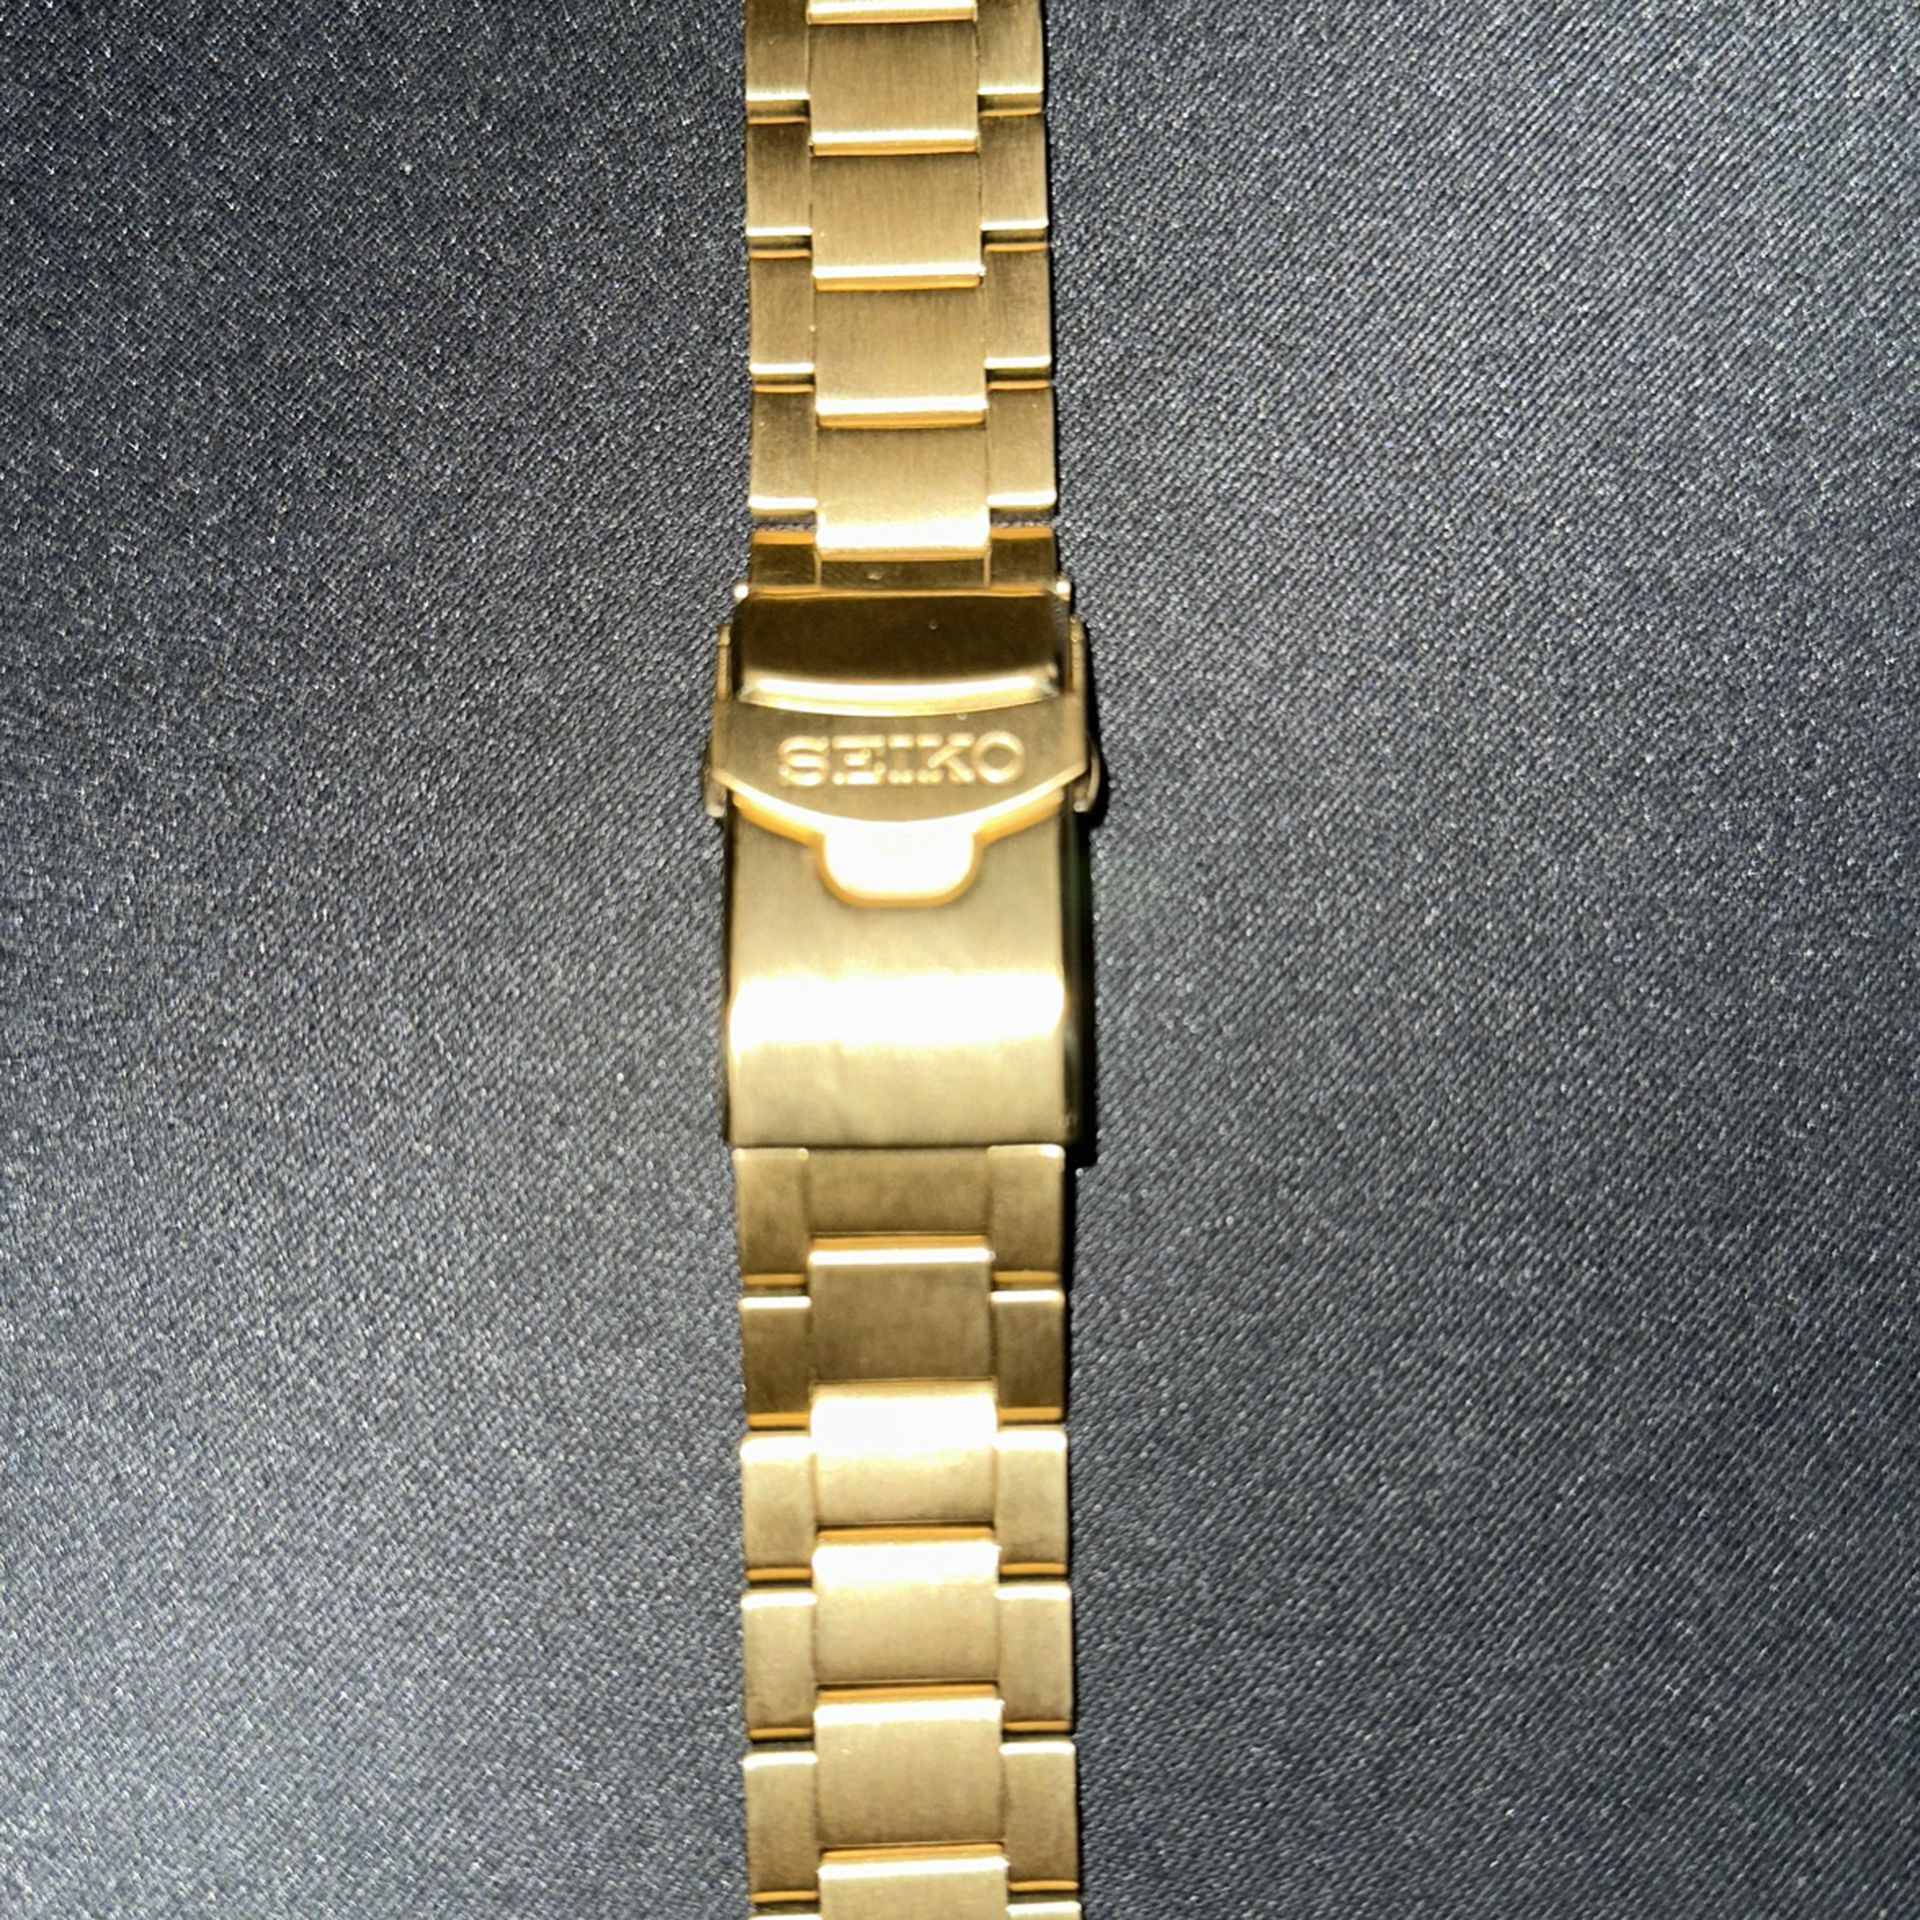 Original Bracelet For Seiko 5 Sports Watches